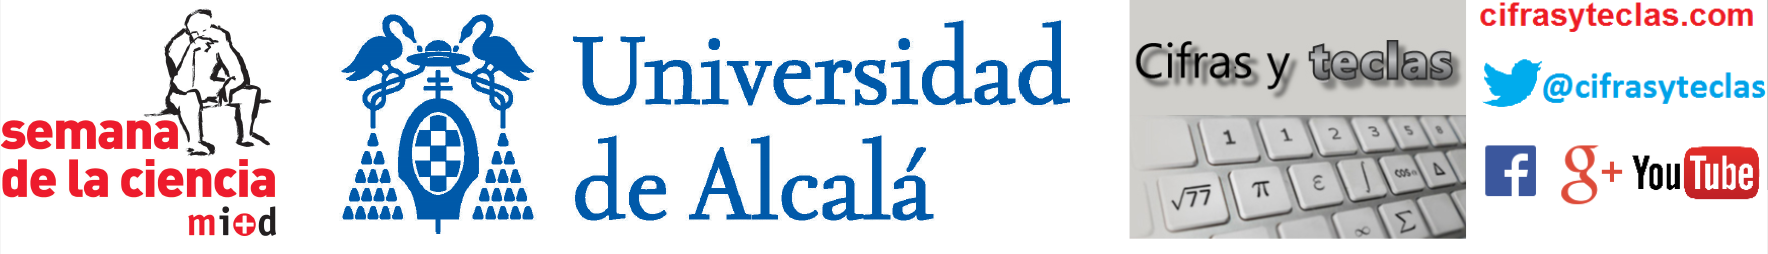 Logos de: Semana de la Ciencia - Universidad de Alcalá - Cifras y teclas